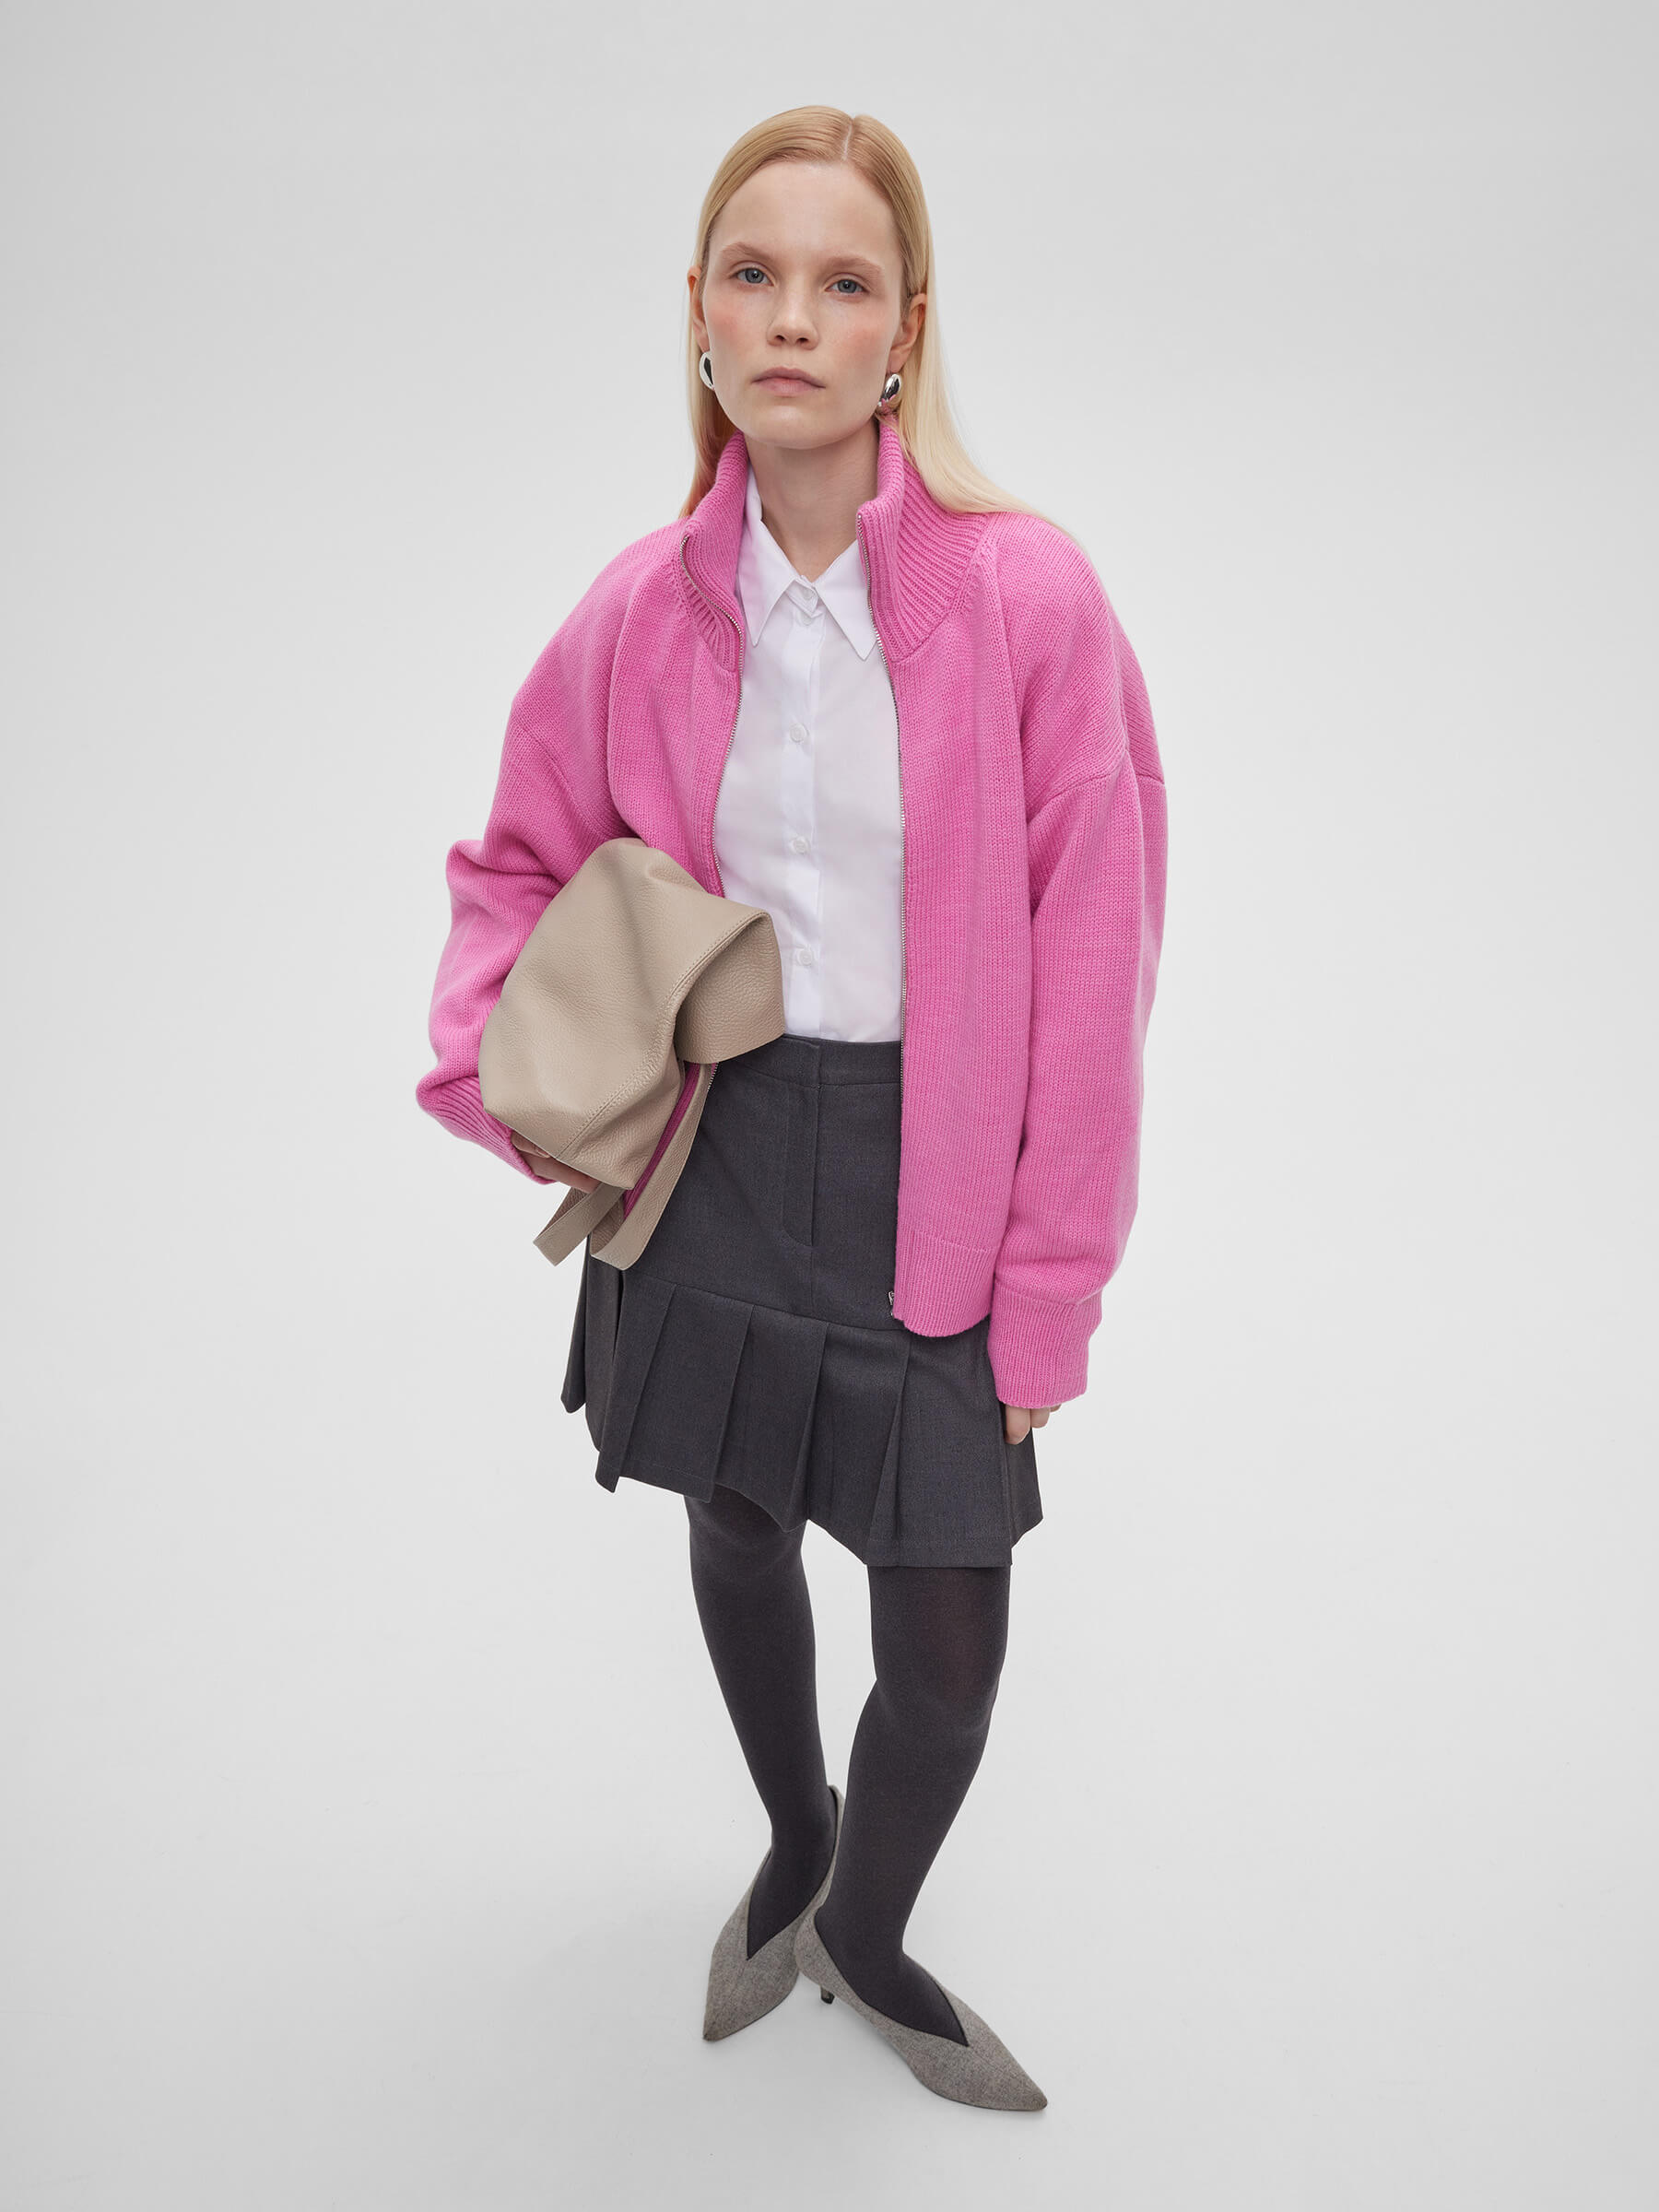 Женский свитер на молнии из шерсти, цвет – розовая фуксия